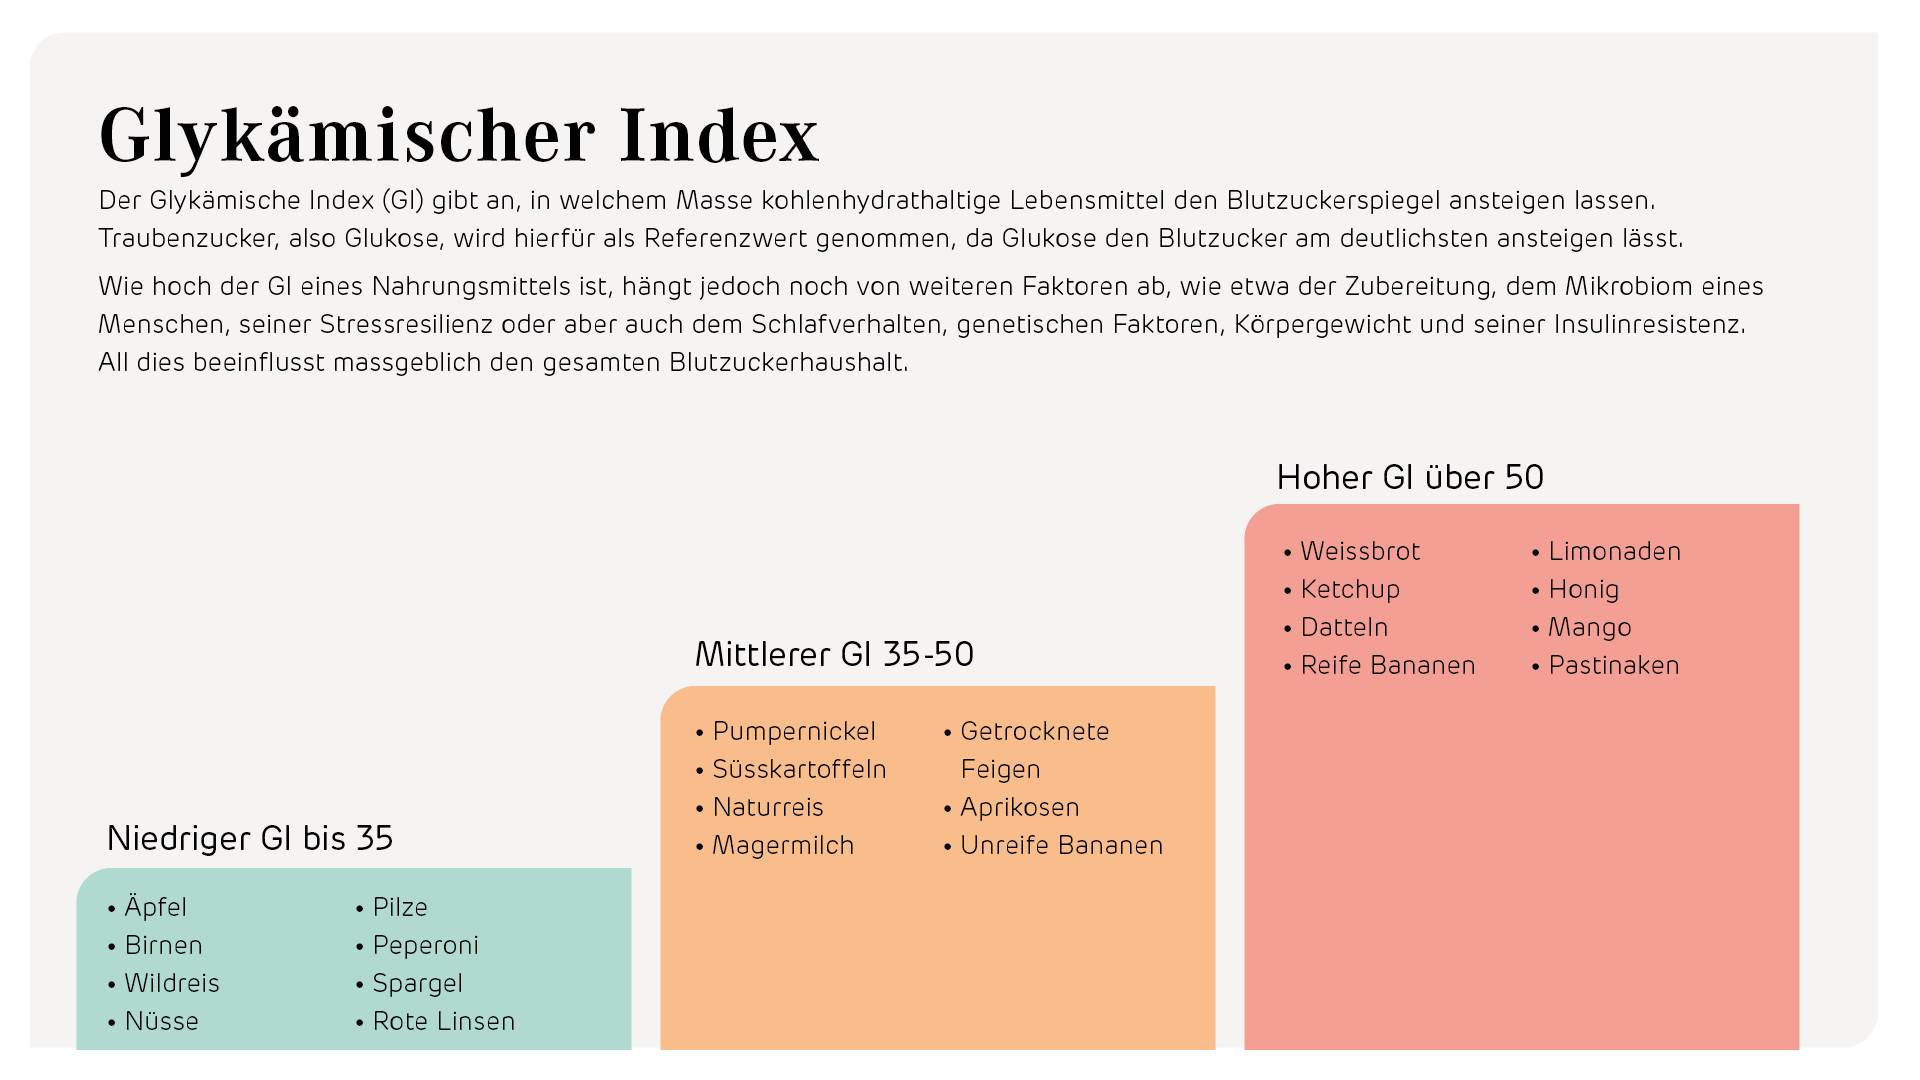 Der Glykämische Index mittels Text und Illustration einfach erklärt.